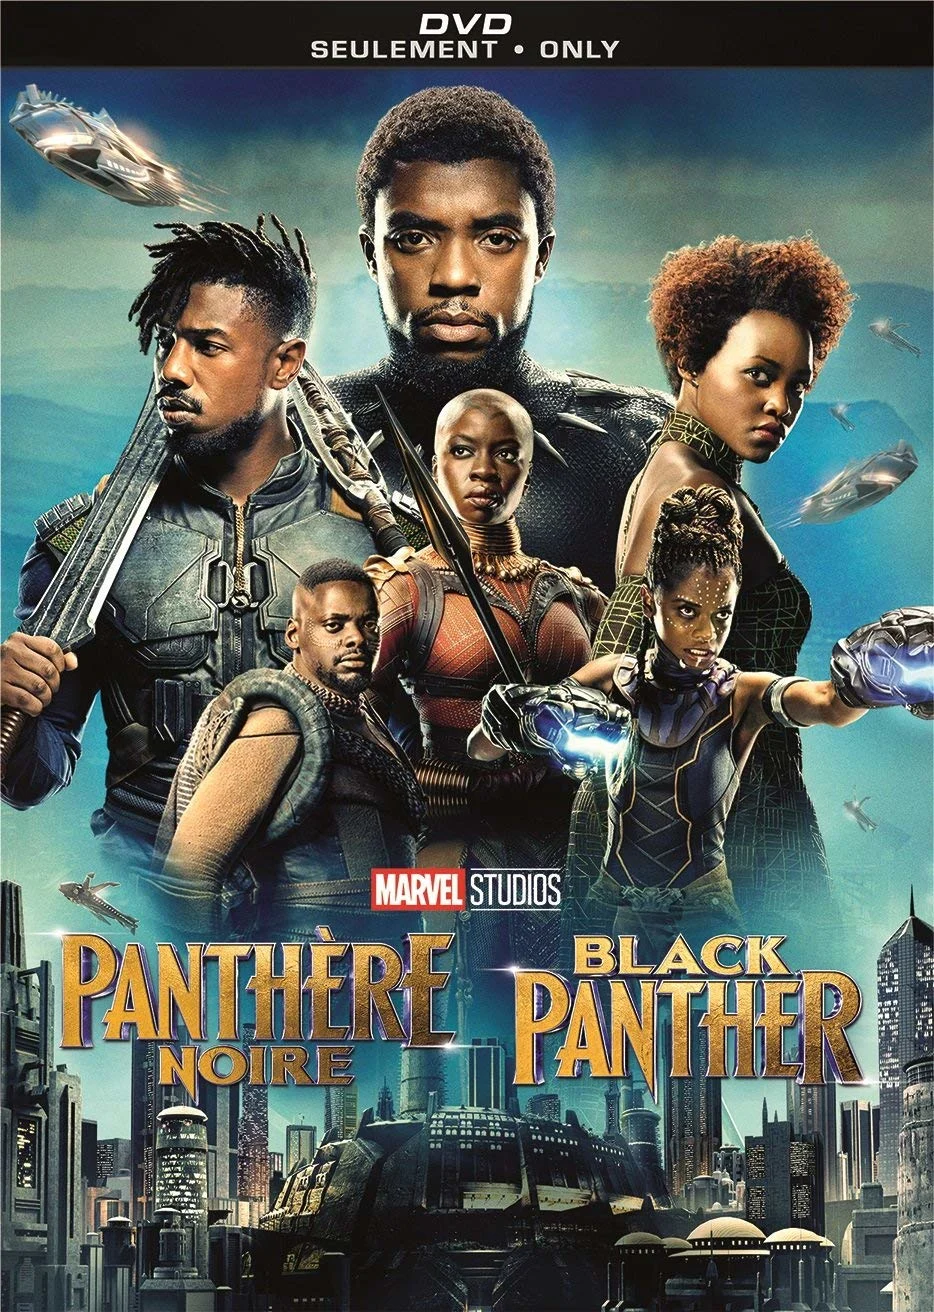 Black Panther (DVD) on MovieShack